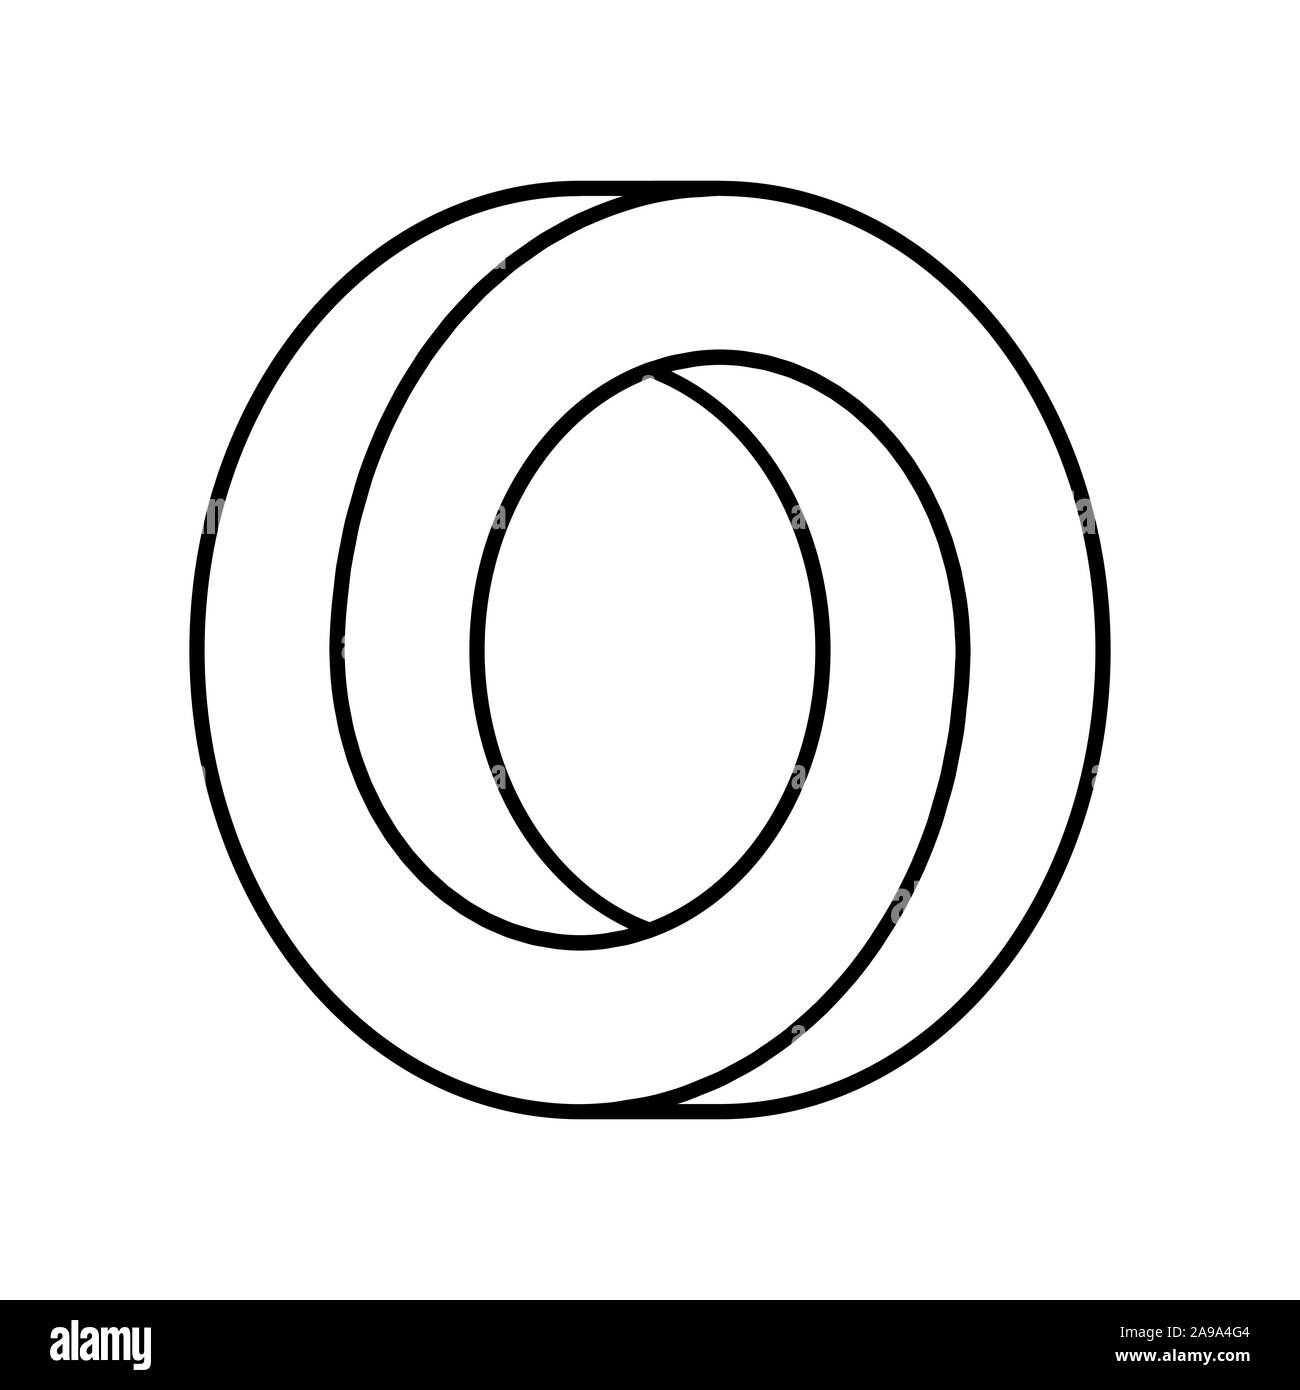 Unmöglich Kreis Form. Optische Täuschung. Lineare unendlichen runden Form. Verriegelung Kreise auf weißem Hintergrund. Abstrakte unendliche Zahl Stock Vektor